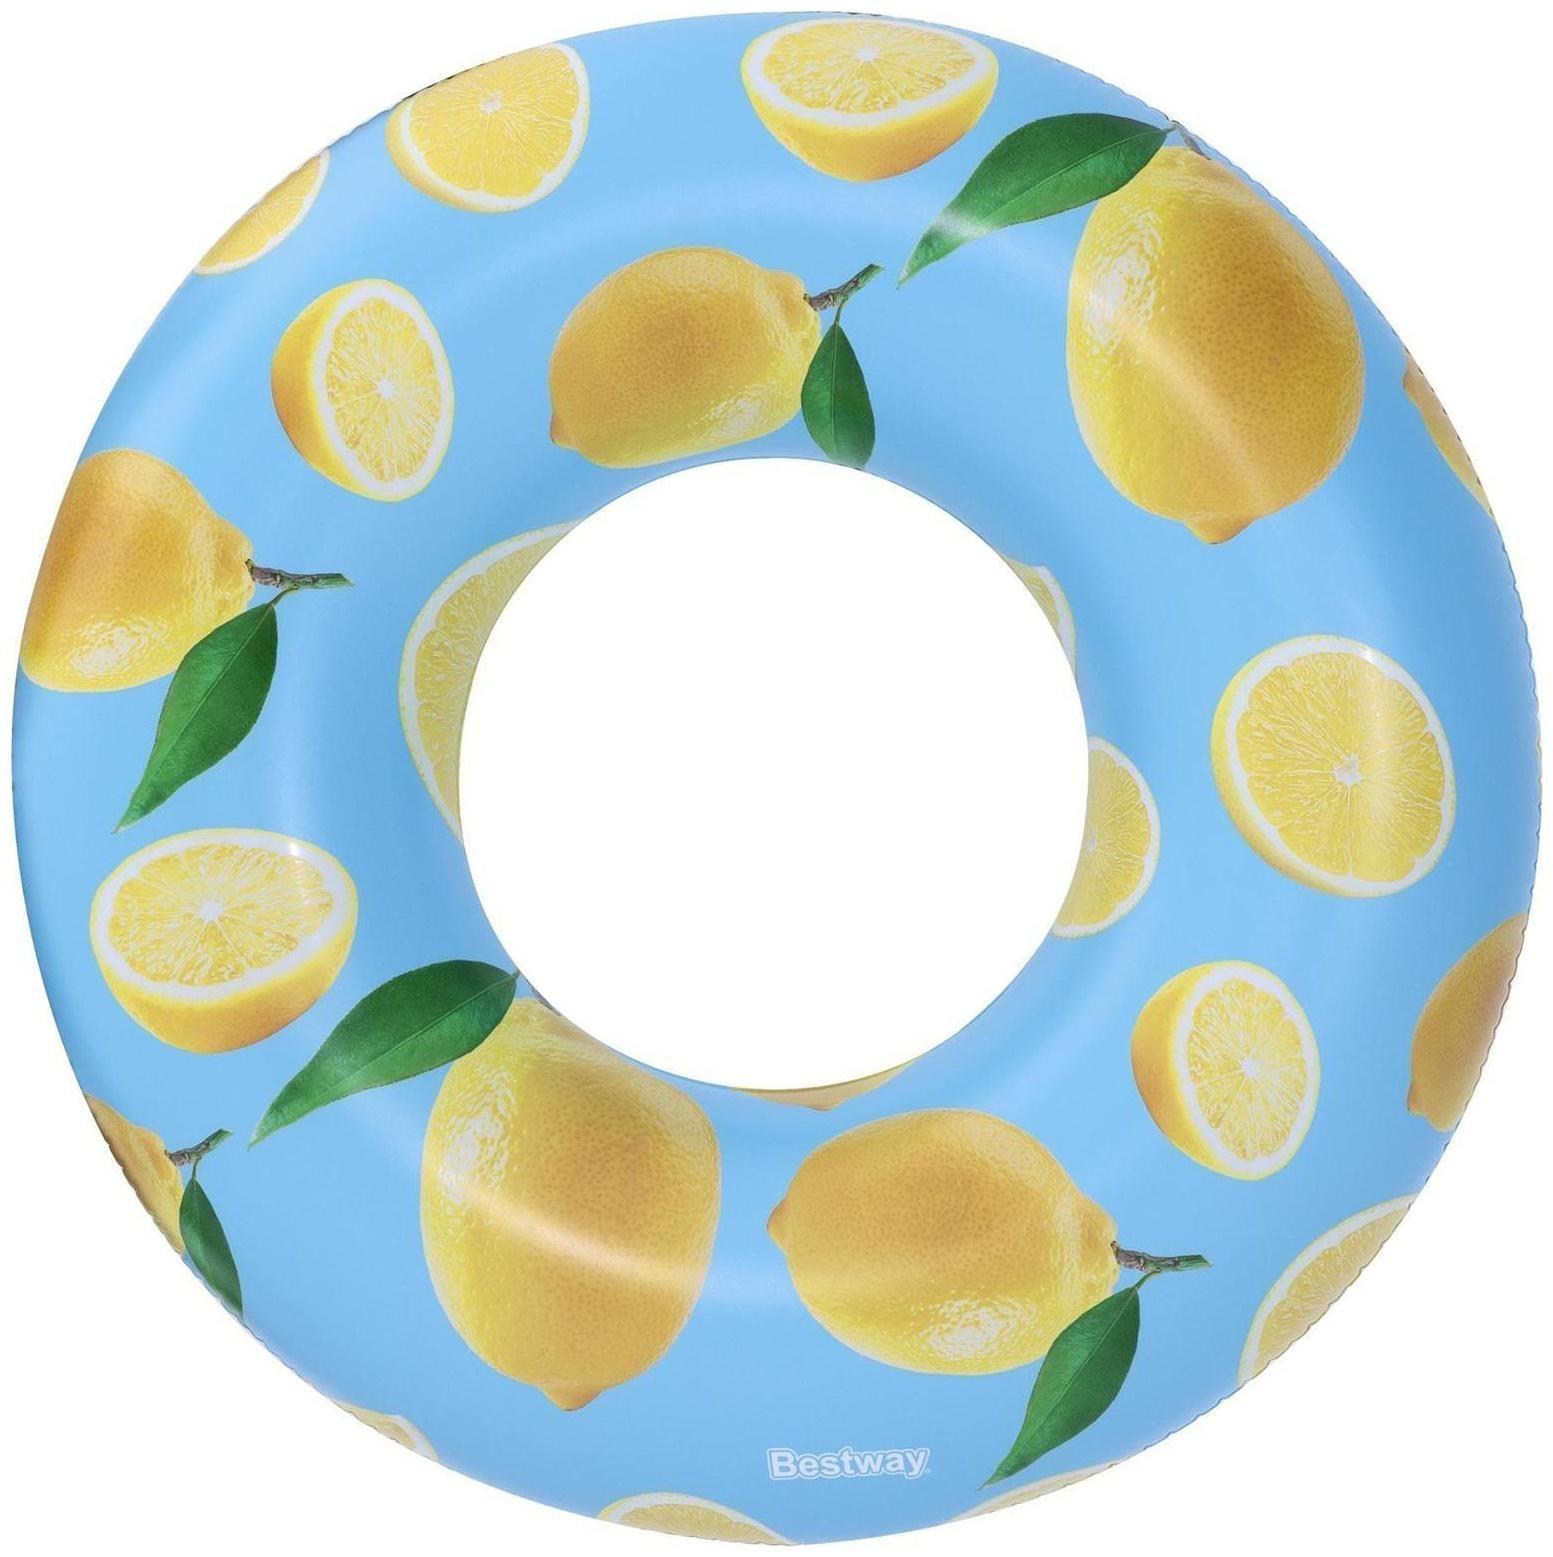 Круг для плавания, 119 см, с запахом лимона, 36229 Bestway